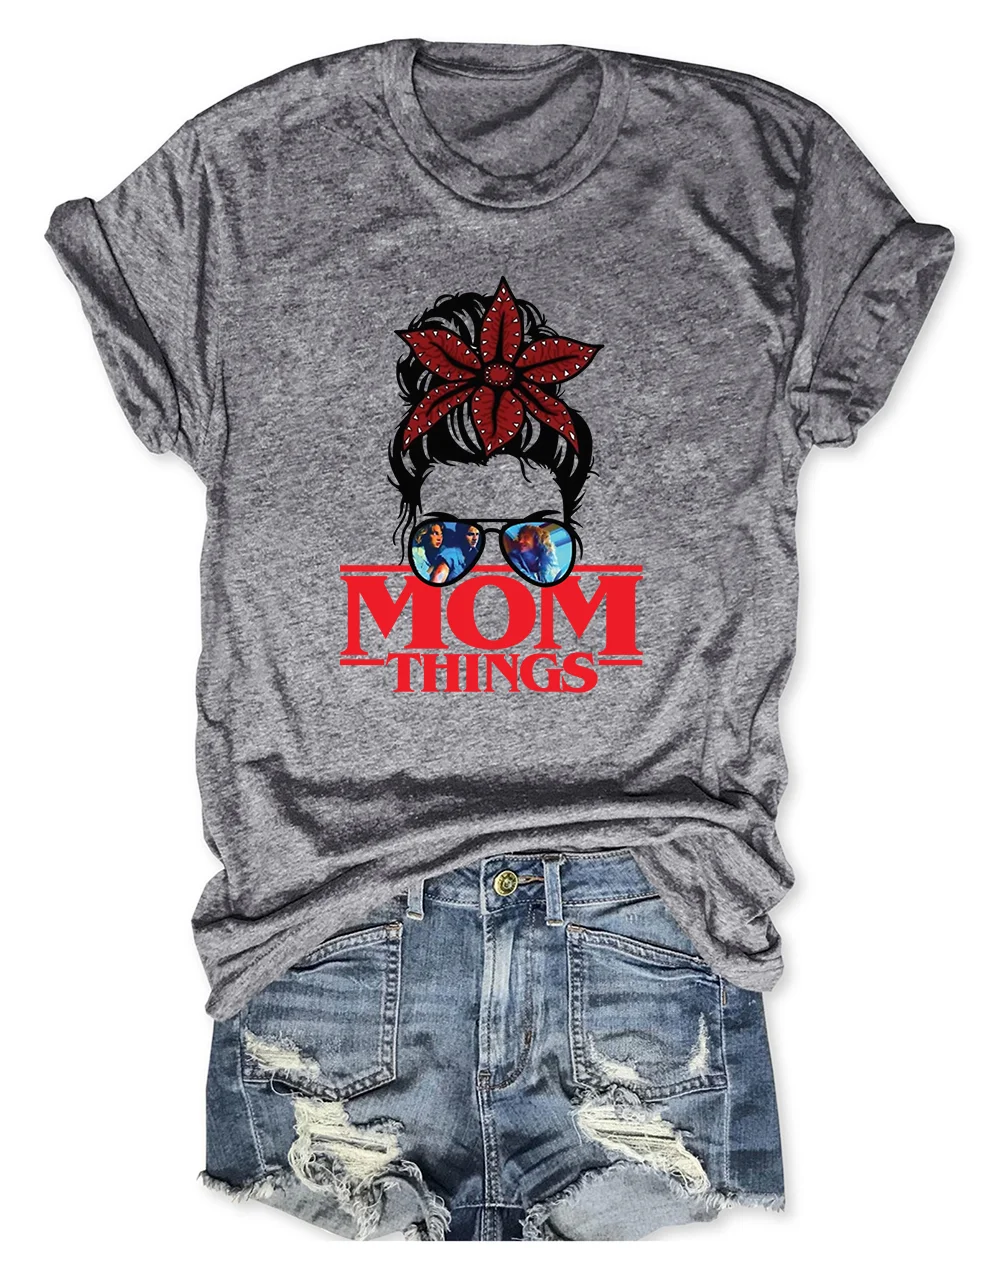 Mom Things T-Shirt